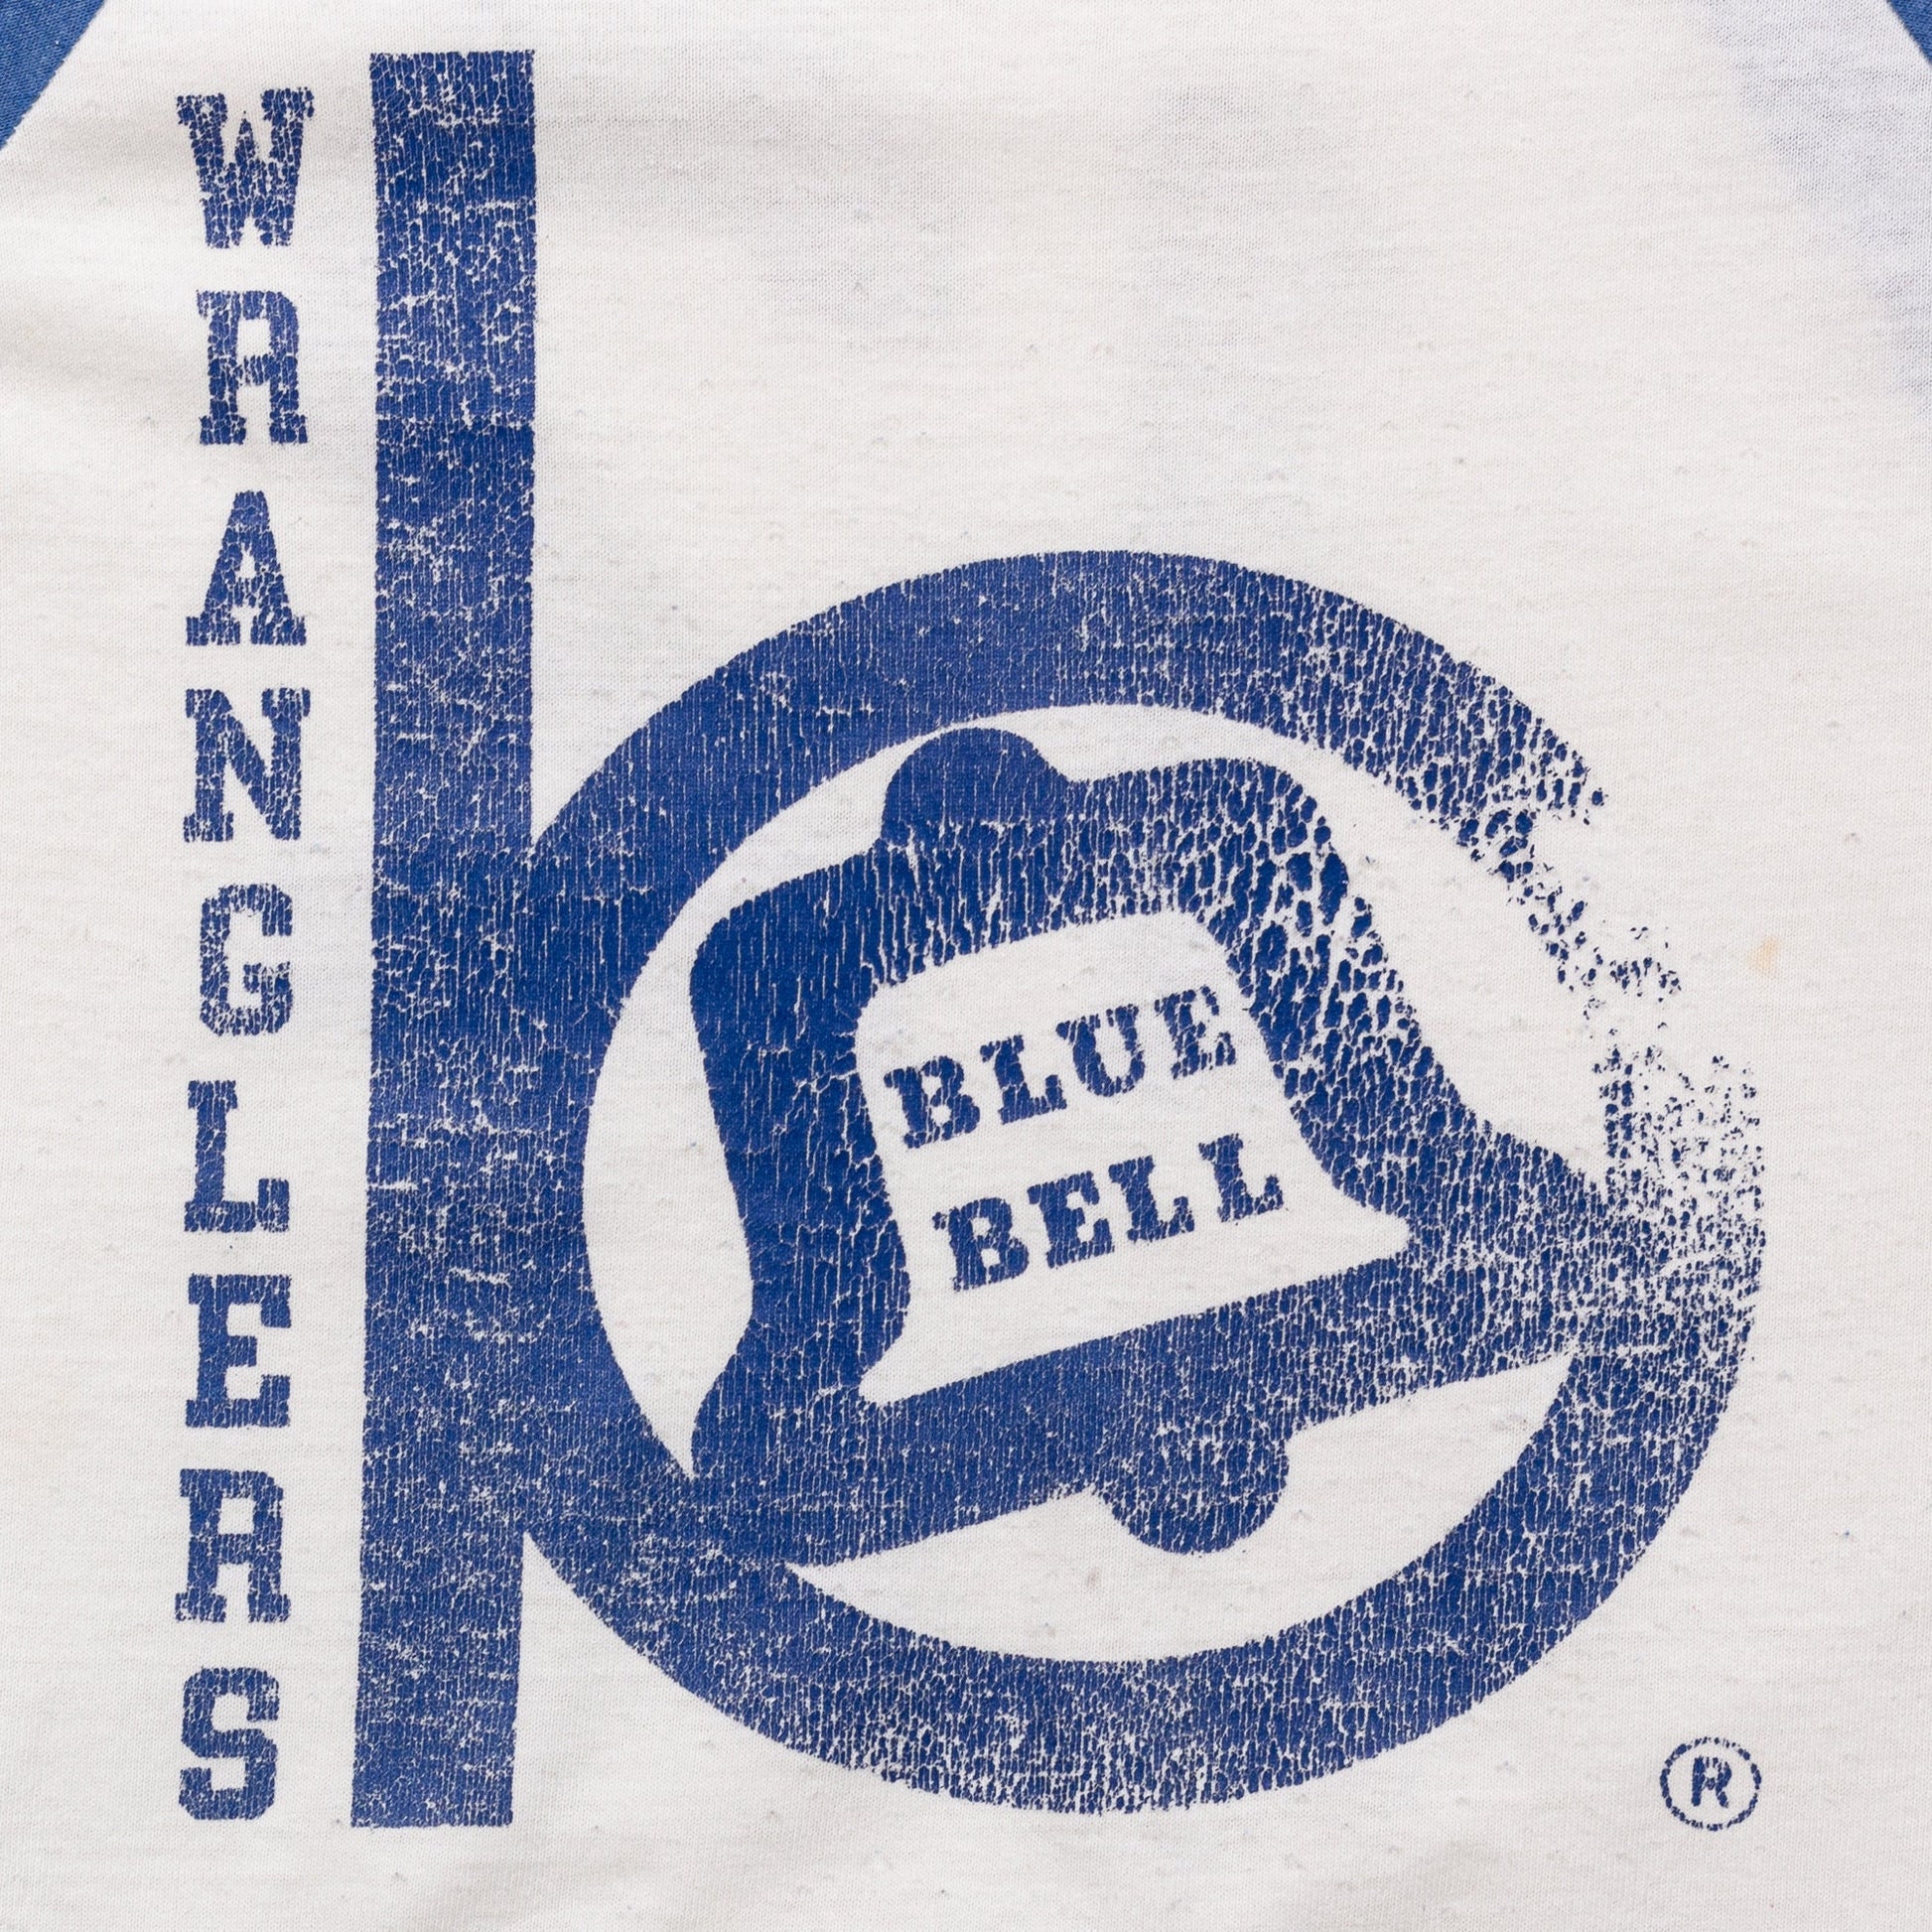 70s Wrangler Blue Bell Baseball Tee - Men's Medium 